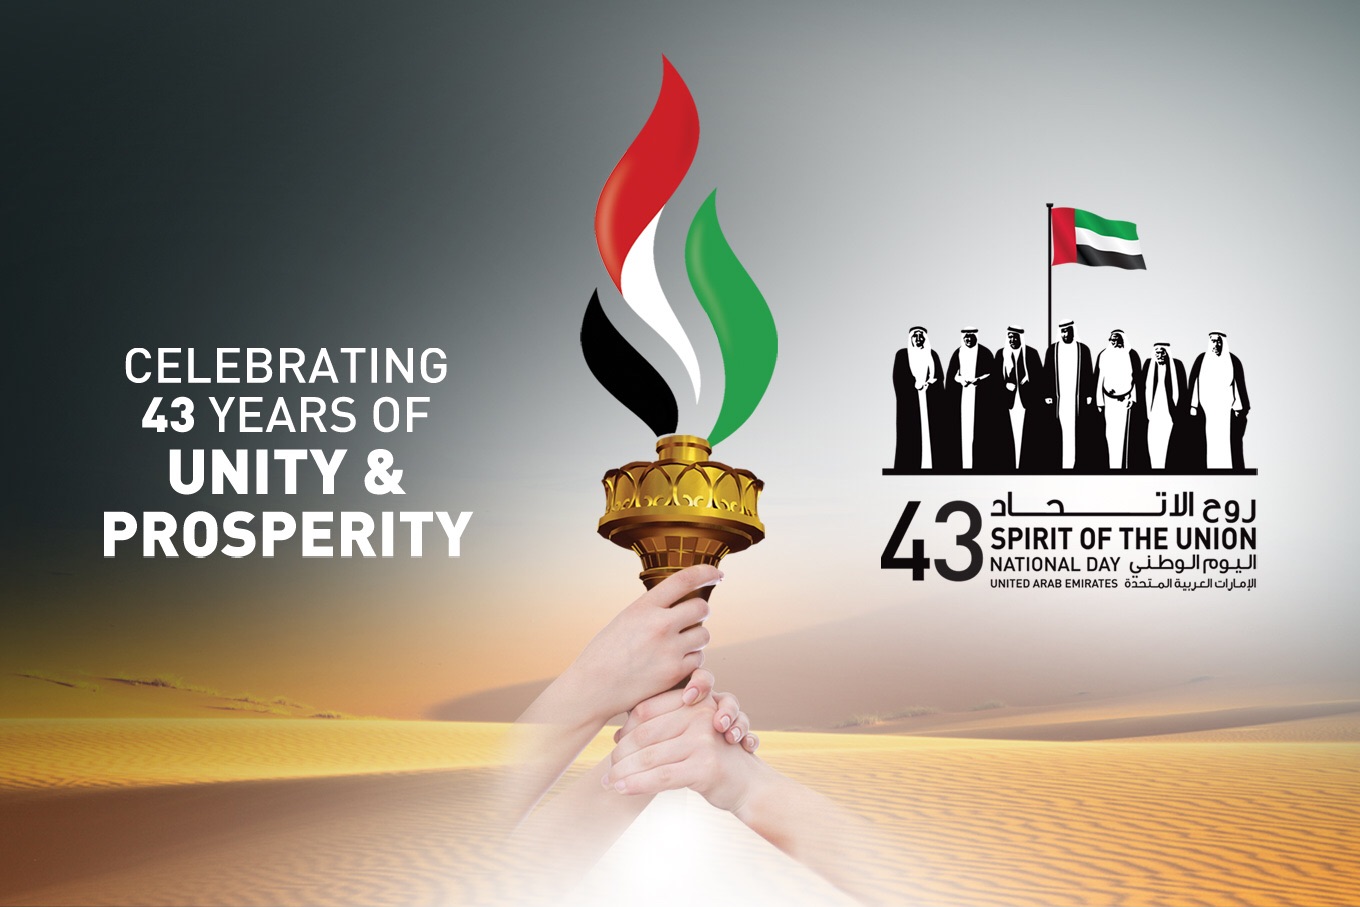 celebrating 43 years of unity & prosperity National Day uae